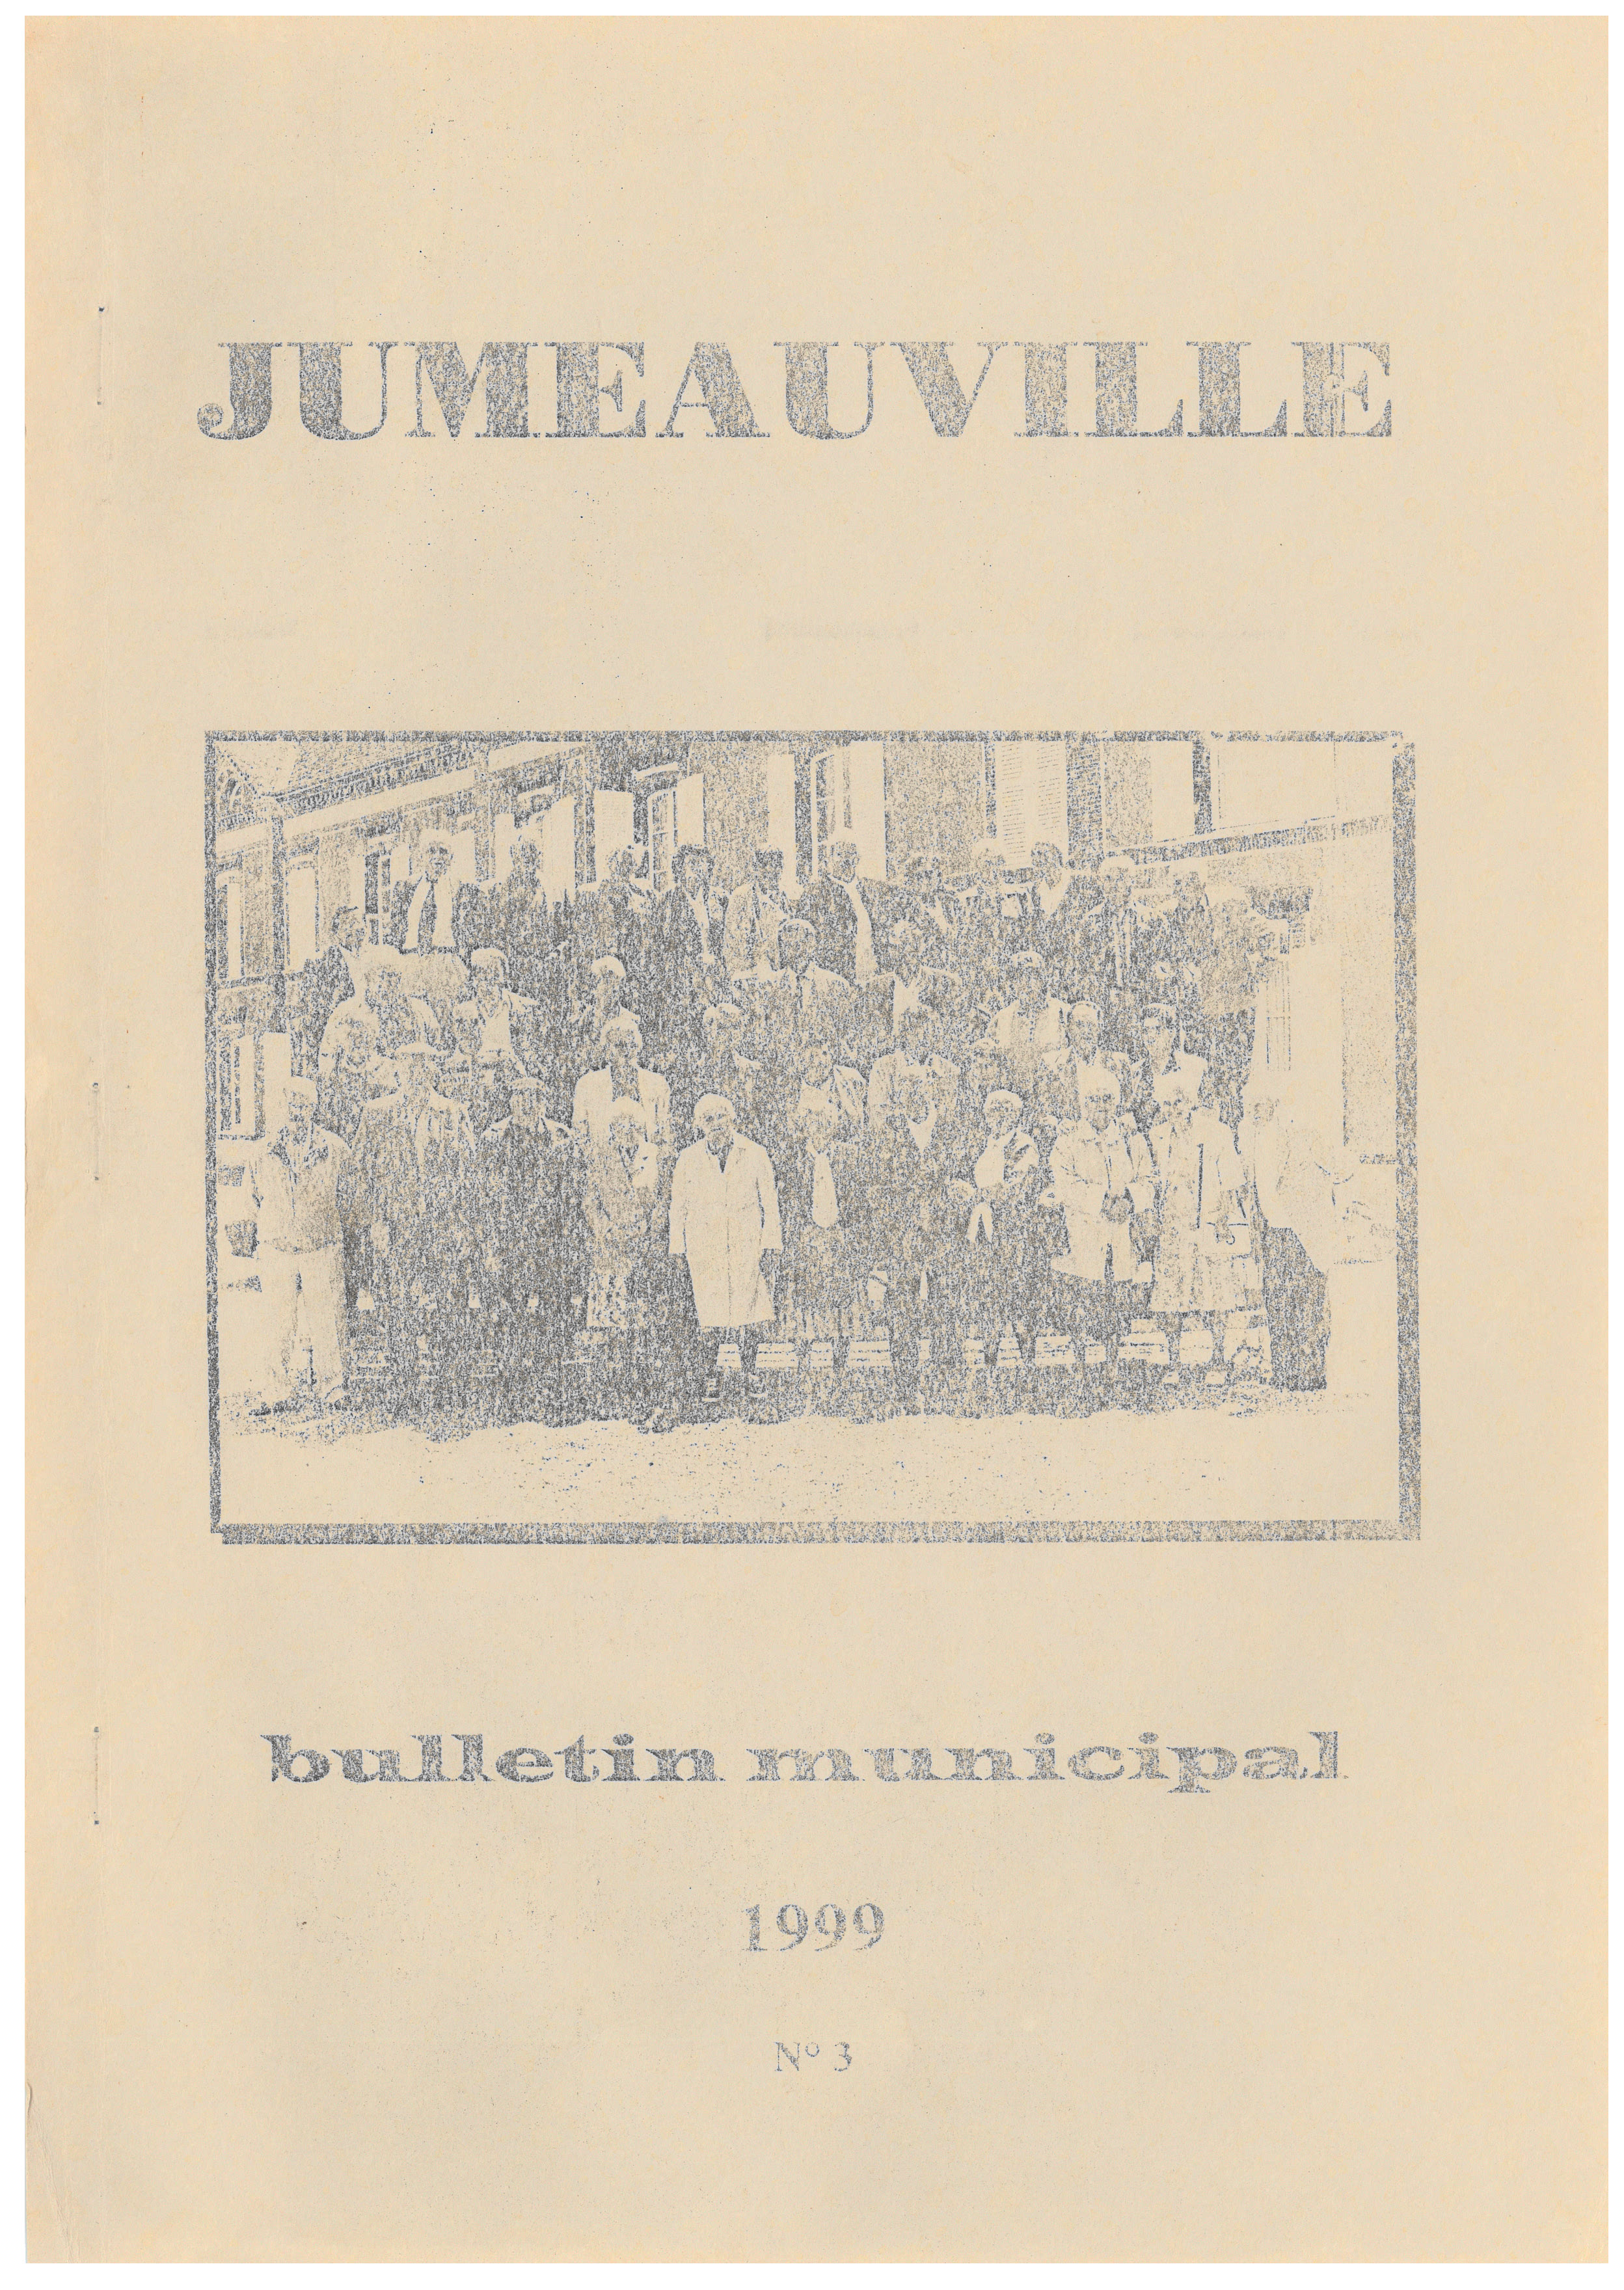 Bulletin Municipal 3 1999